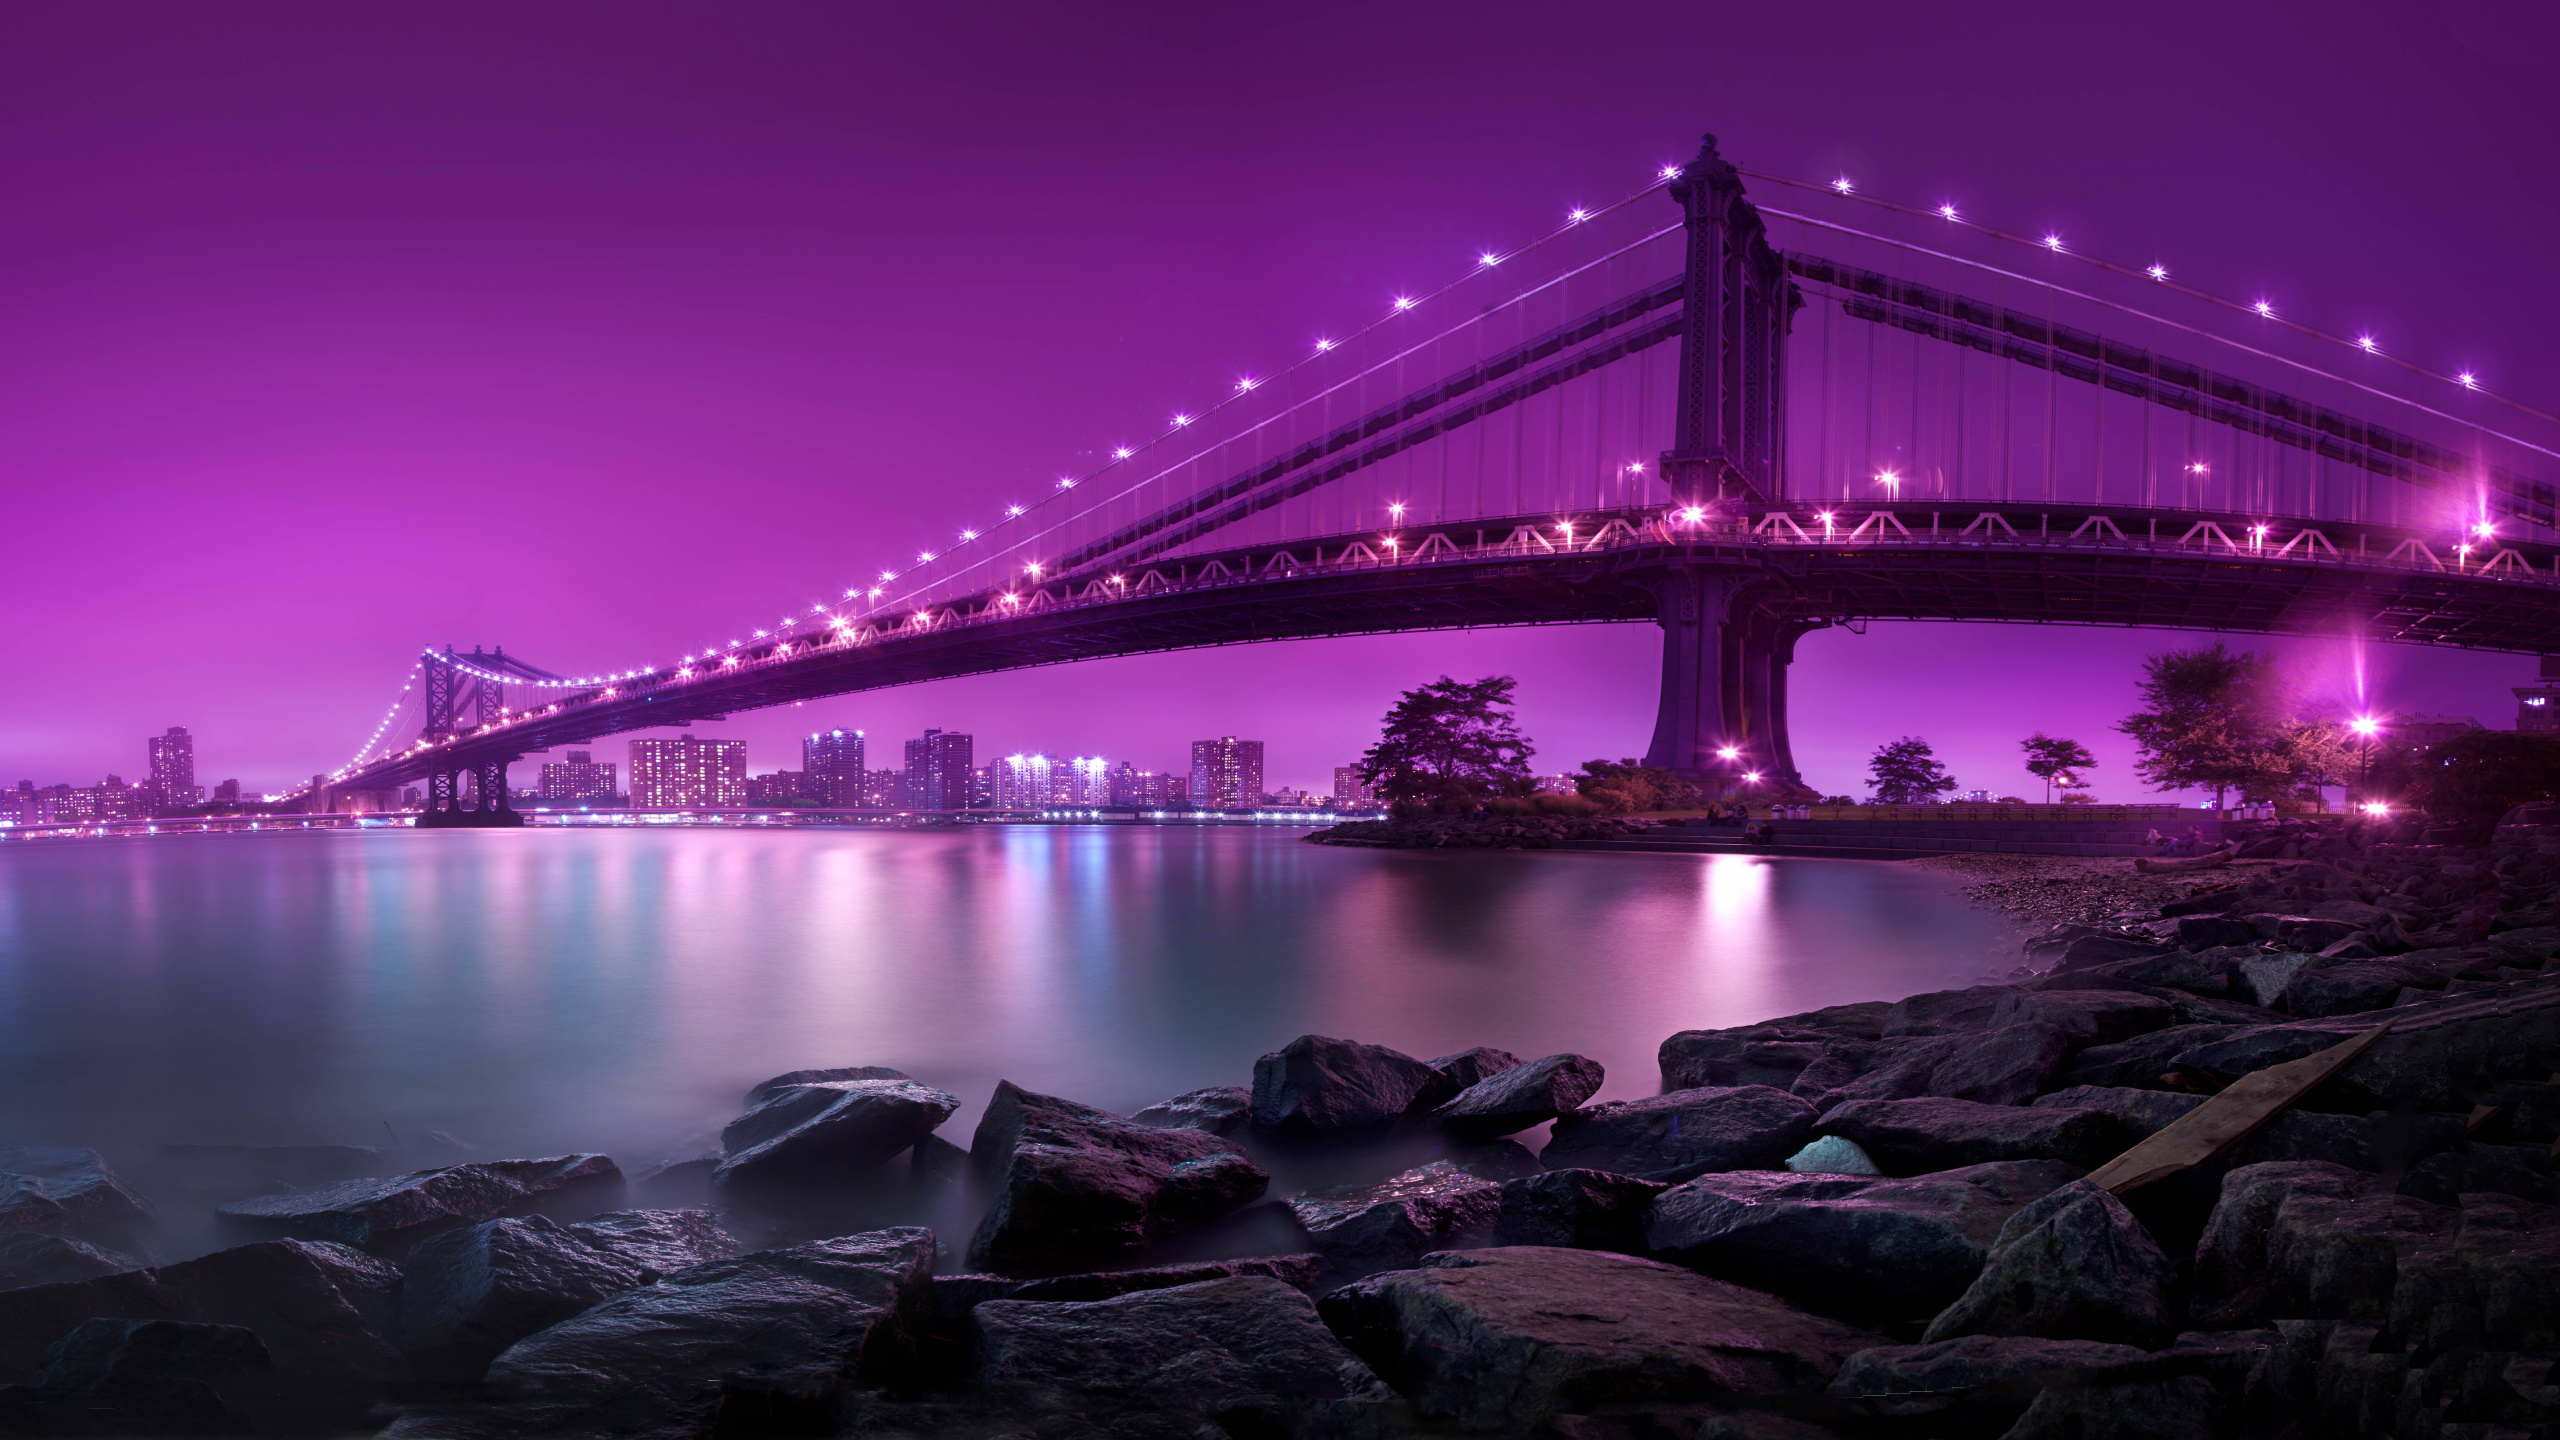 紫色的, 里程碑, 反射, 城市景观, 曼哈顿大桥 壁纸 2560x1440 允许